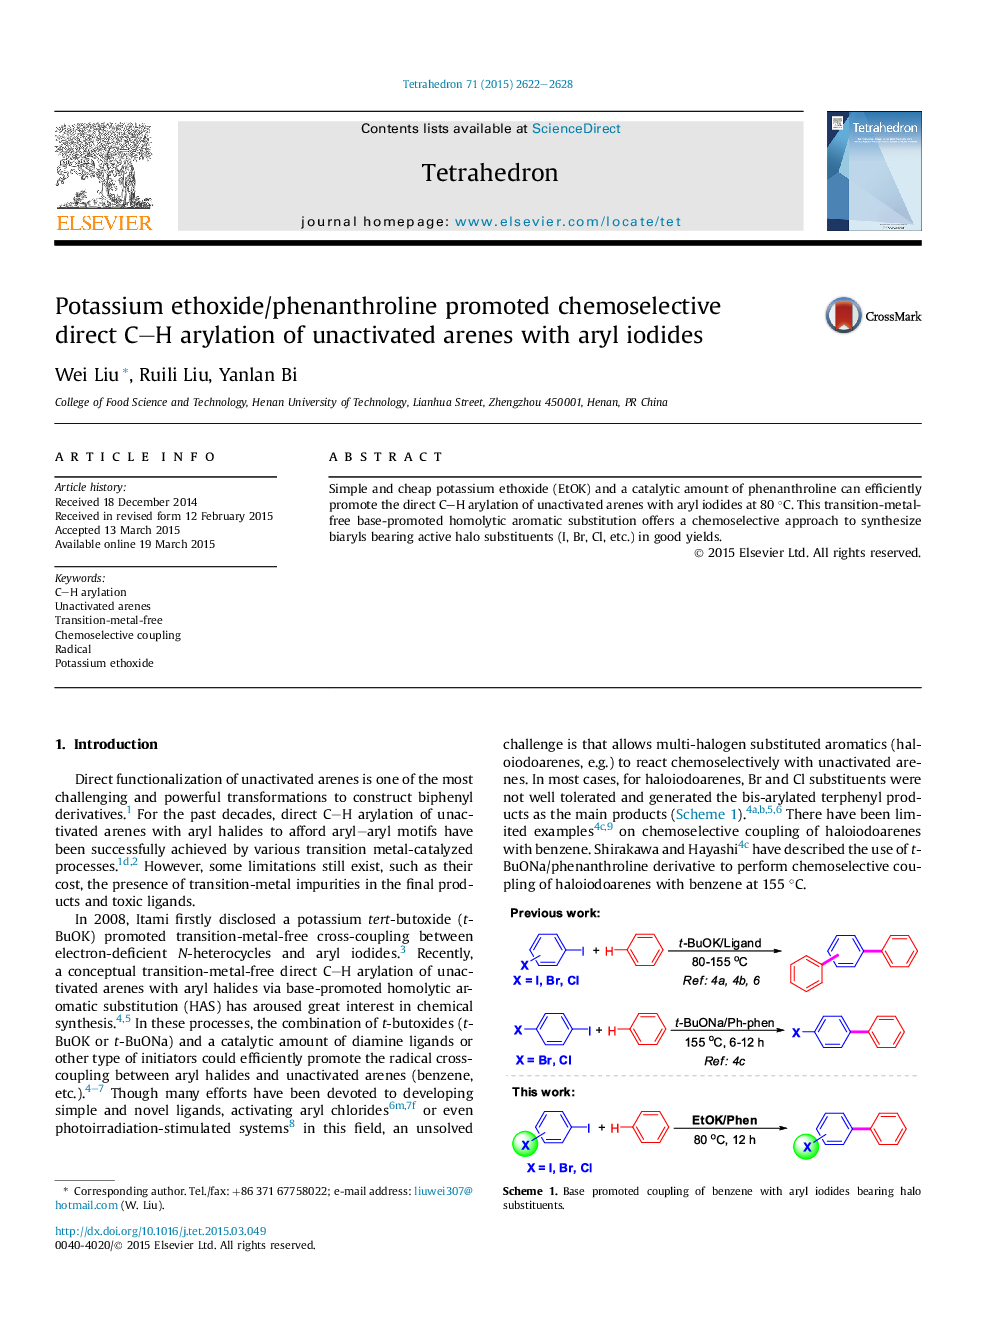 Potassium ethoxide/phenanthroline promoted chemoselective direct C-H arylation of unactivated arenes with aryl iodides